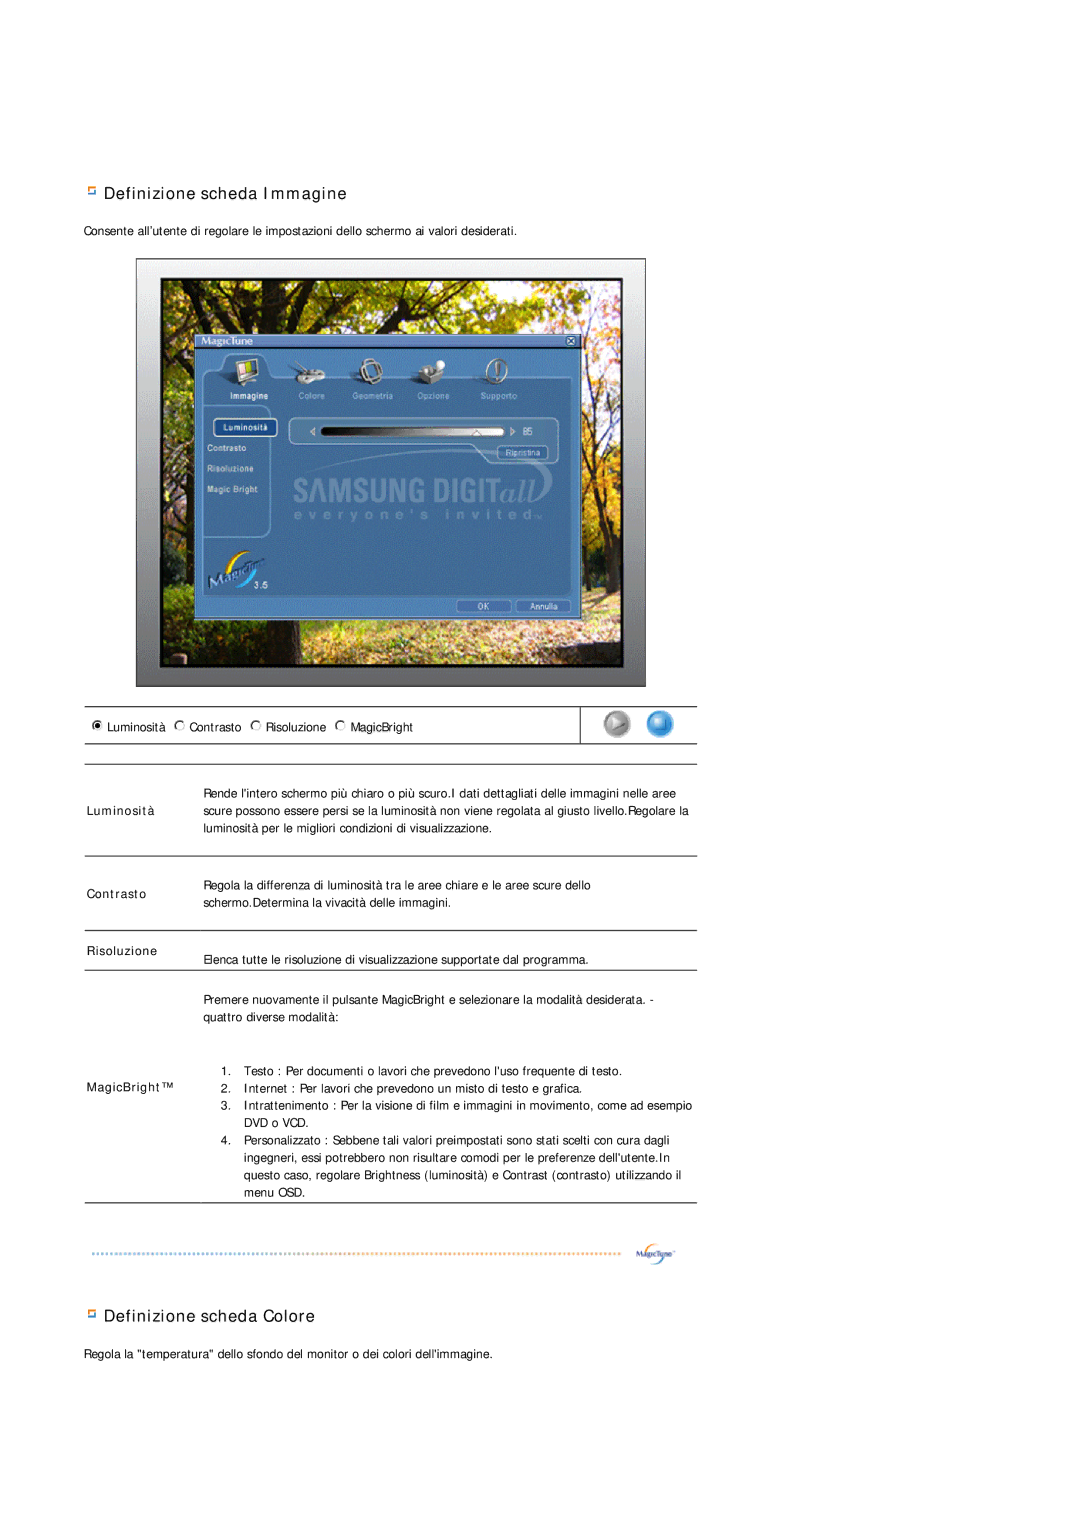 Samsung MJ17CSKS/EDC manual Definizione scheda Immagine 